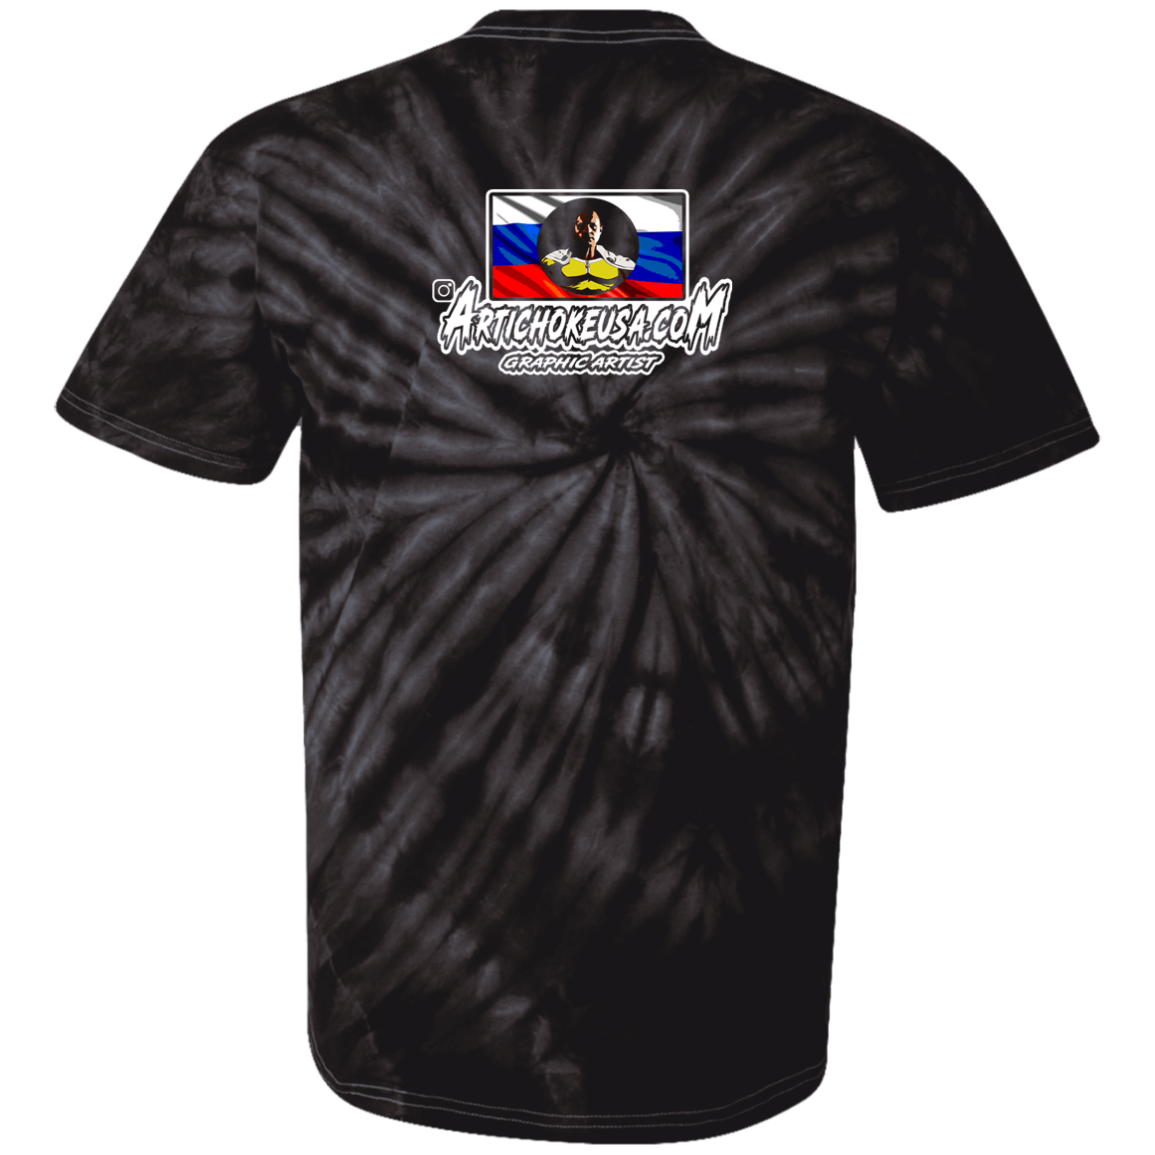 ArtichokeUSA Custom Design. One Punch Fedor. Fedor Emelianenko/One Punch Man Fan Art. 100% Cotton Tie Dye T-Shirt